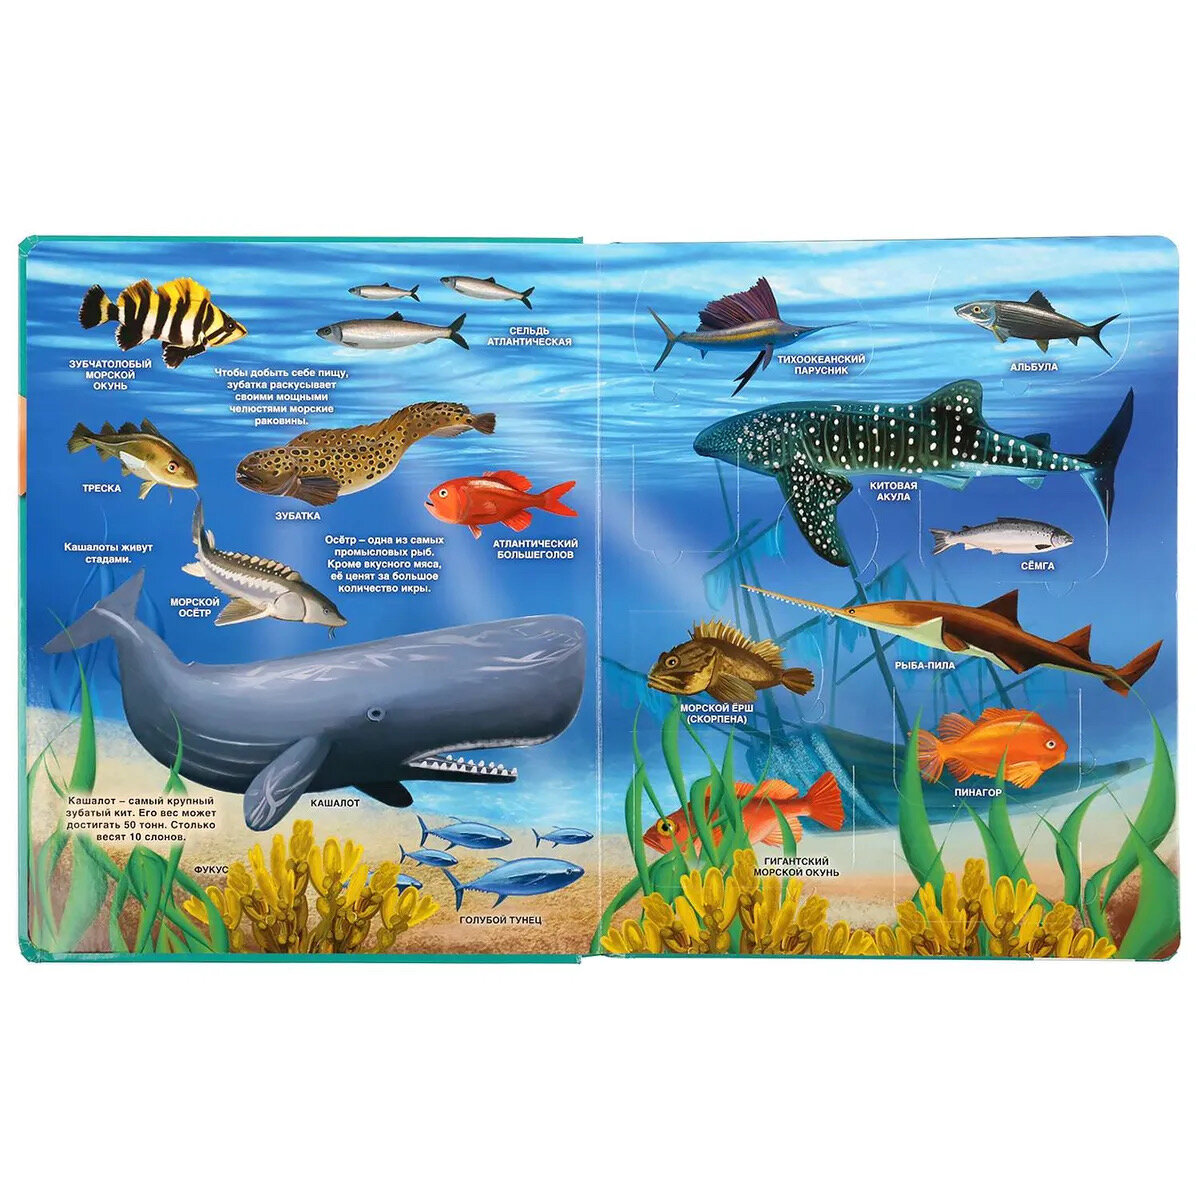 Детская книжка "Тайны подводного мира" с 100 секретными окошками от бренда Умка